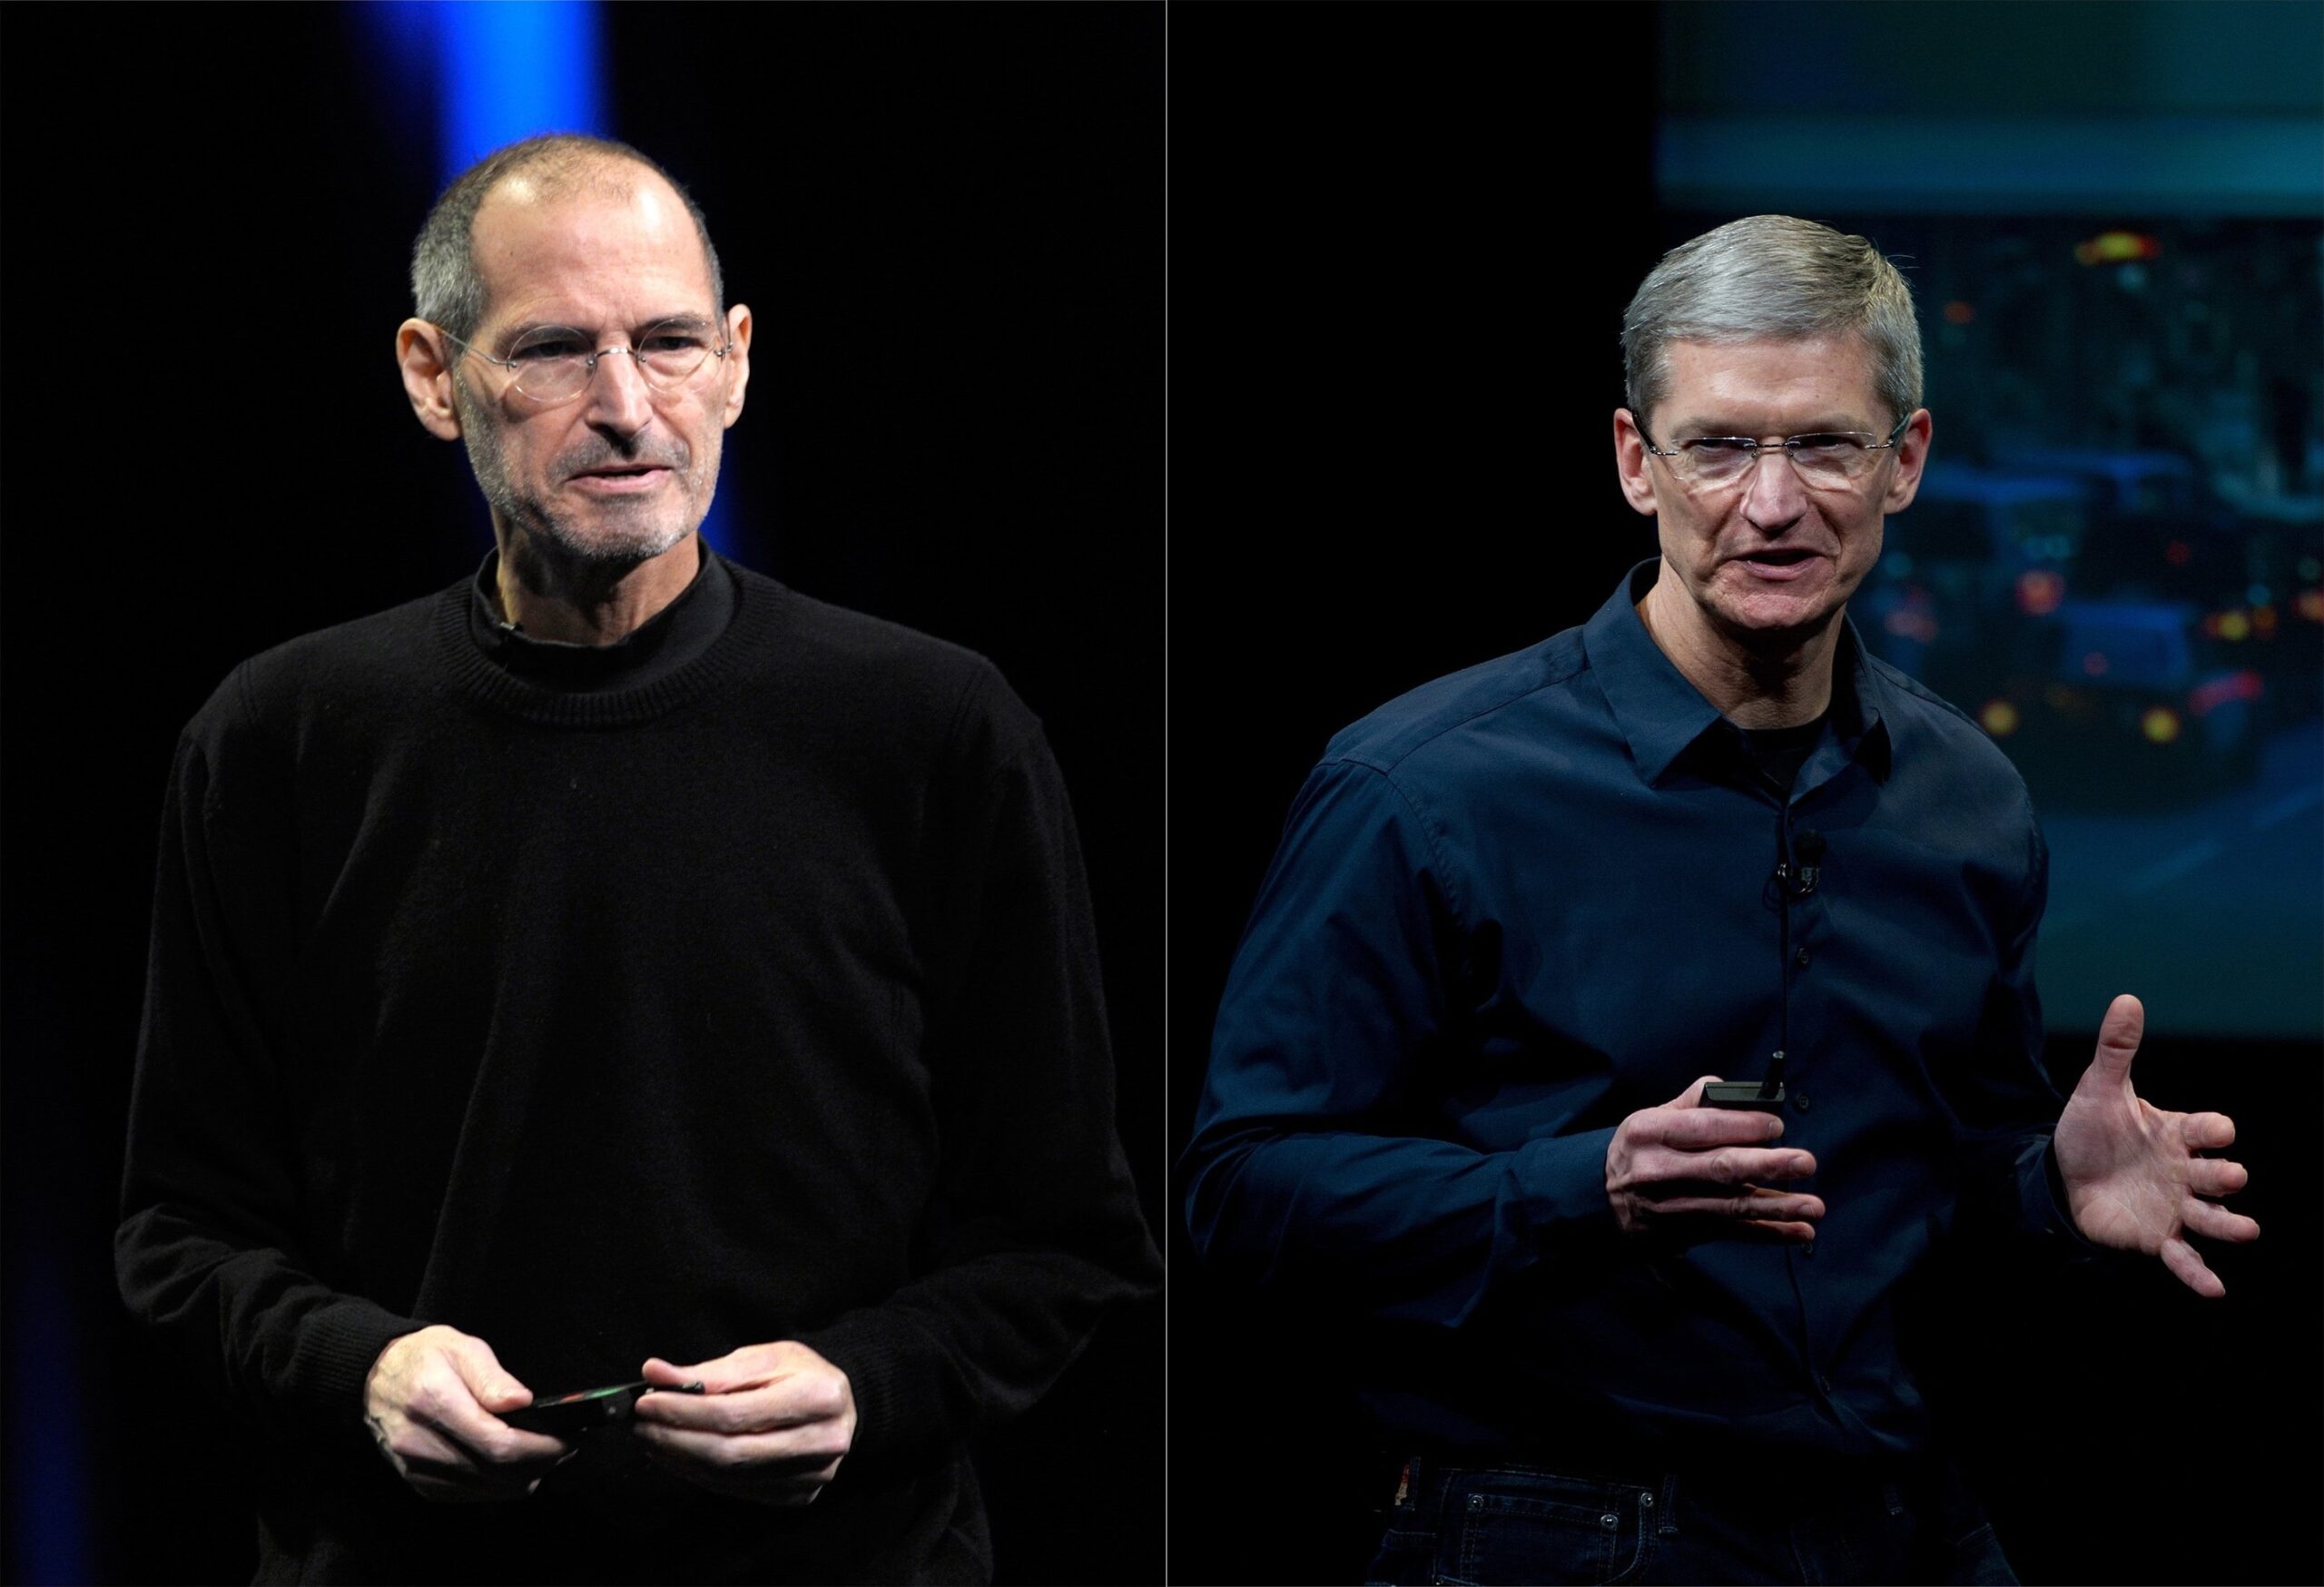 Montagem com fotos de Steve Jobs e Tim Cook